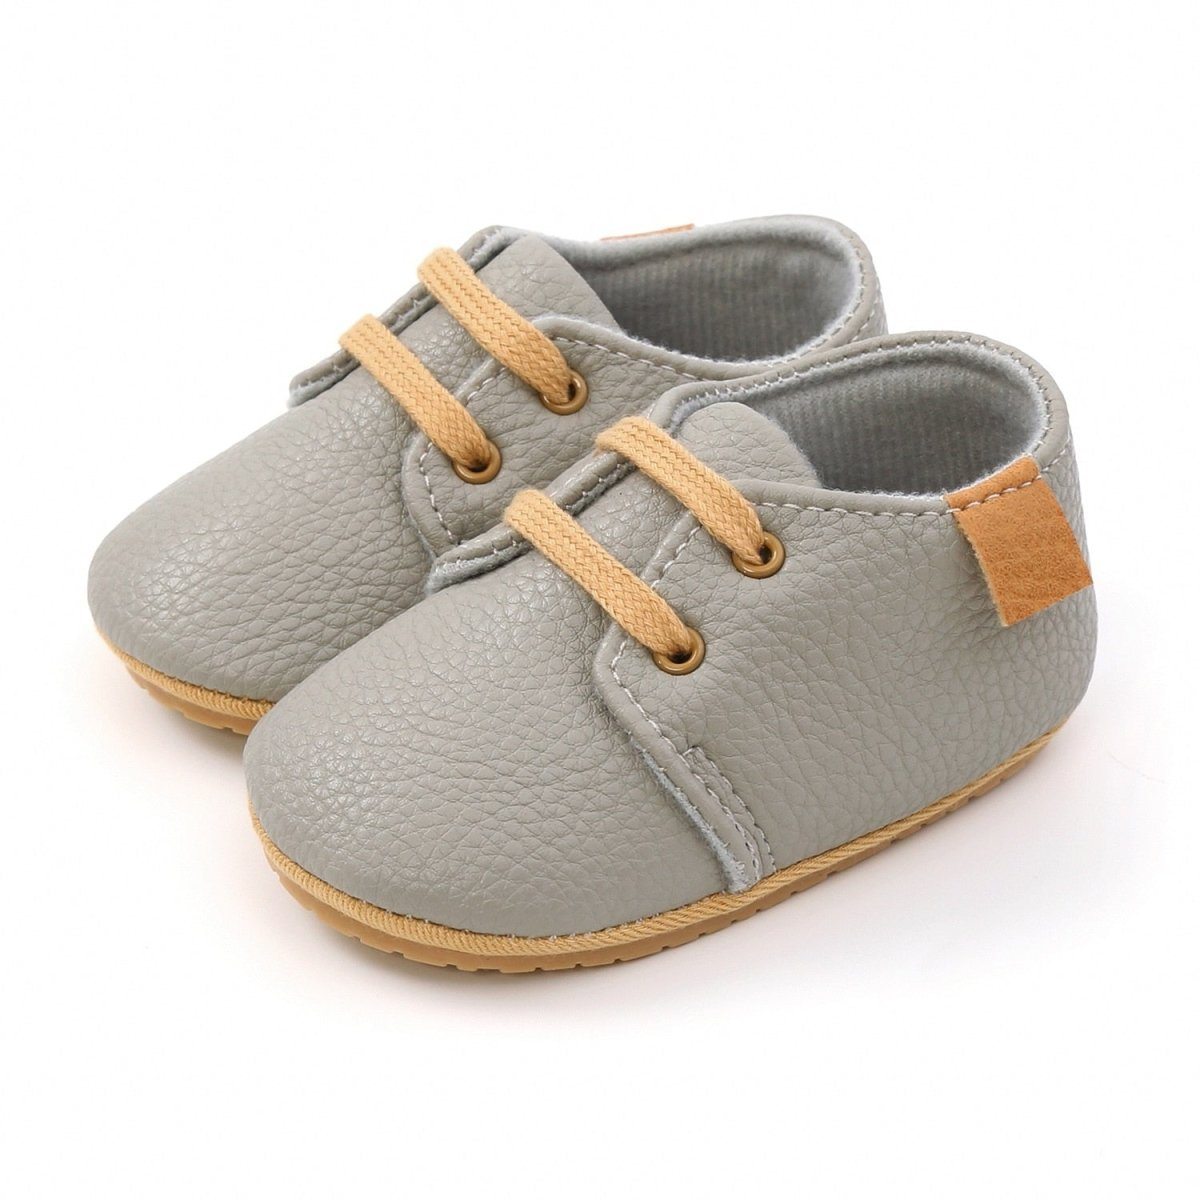 Infant Multicolor Retro Leather Shoes Infant Multicolor Retro Leather Shoes Baby Bubble Store Gray 0-6 Months 